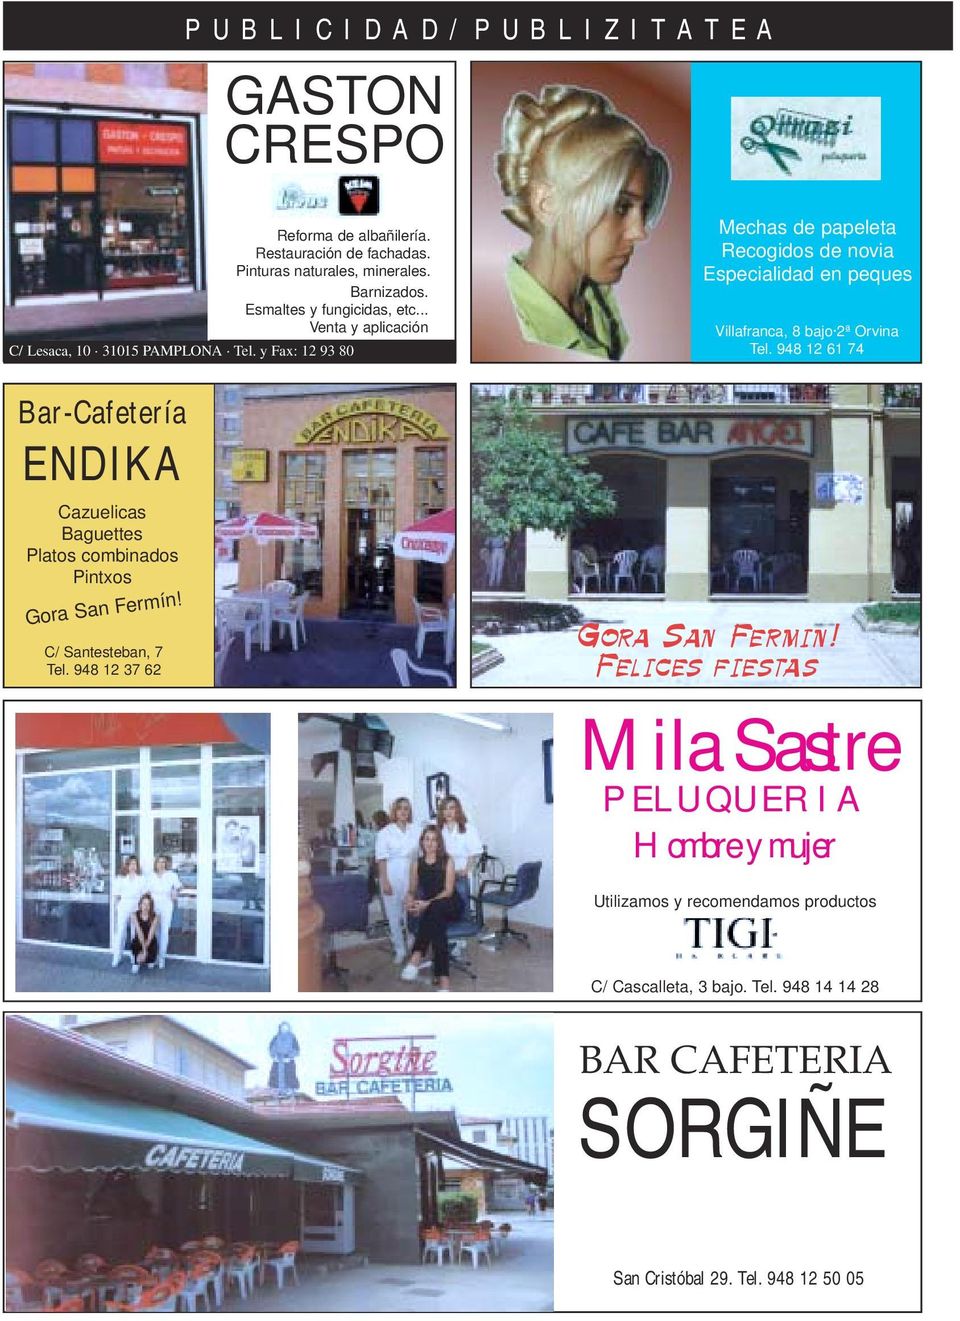 948 12 61 74 Bar-Cafetería ENDIKA Cazuelicas Baguettes Platos combinados Pintxos Gora San Fermín! C/ Santesteban, 7 Tel. 948 12 37 62 Gora San Fermin!